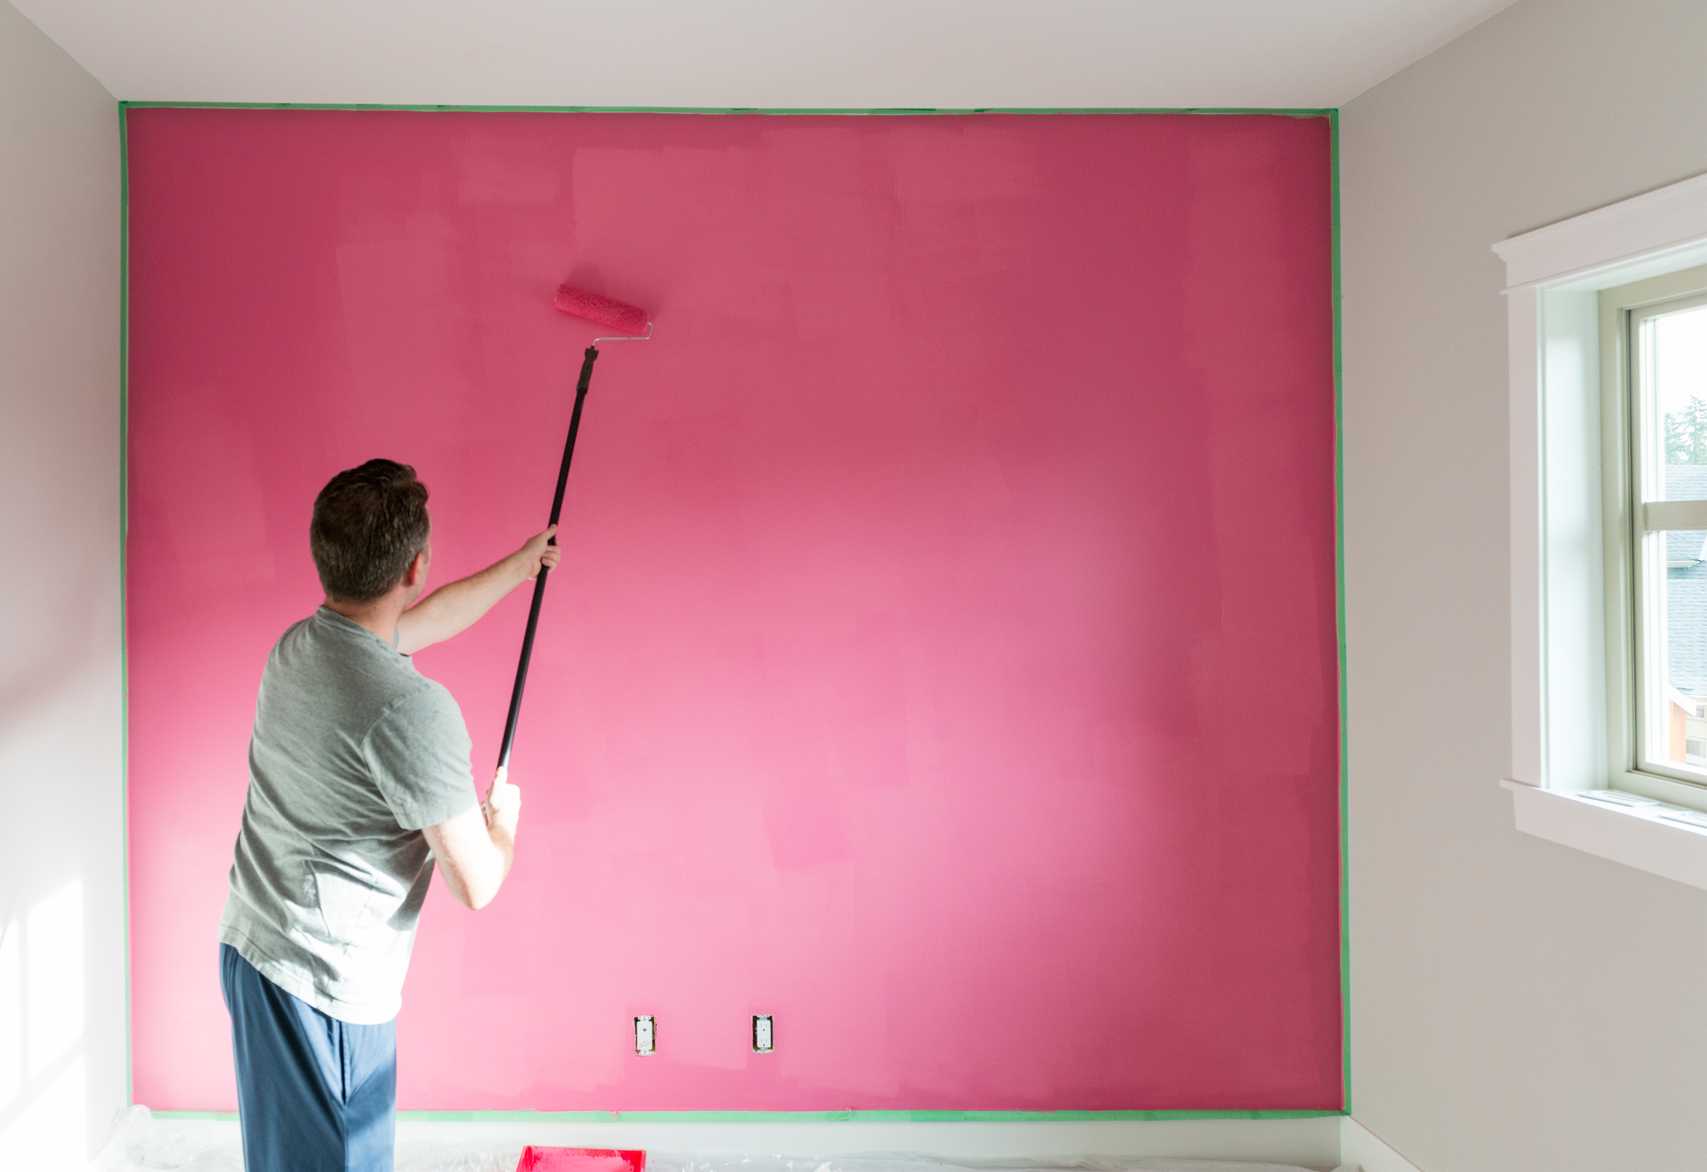 Обои или покраска стен что лучше? 30 фото что выбрать - покрасить стены или поклеить обои в комнате, что дороже и практичнее для квартиры